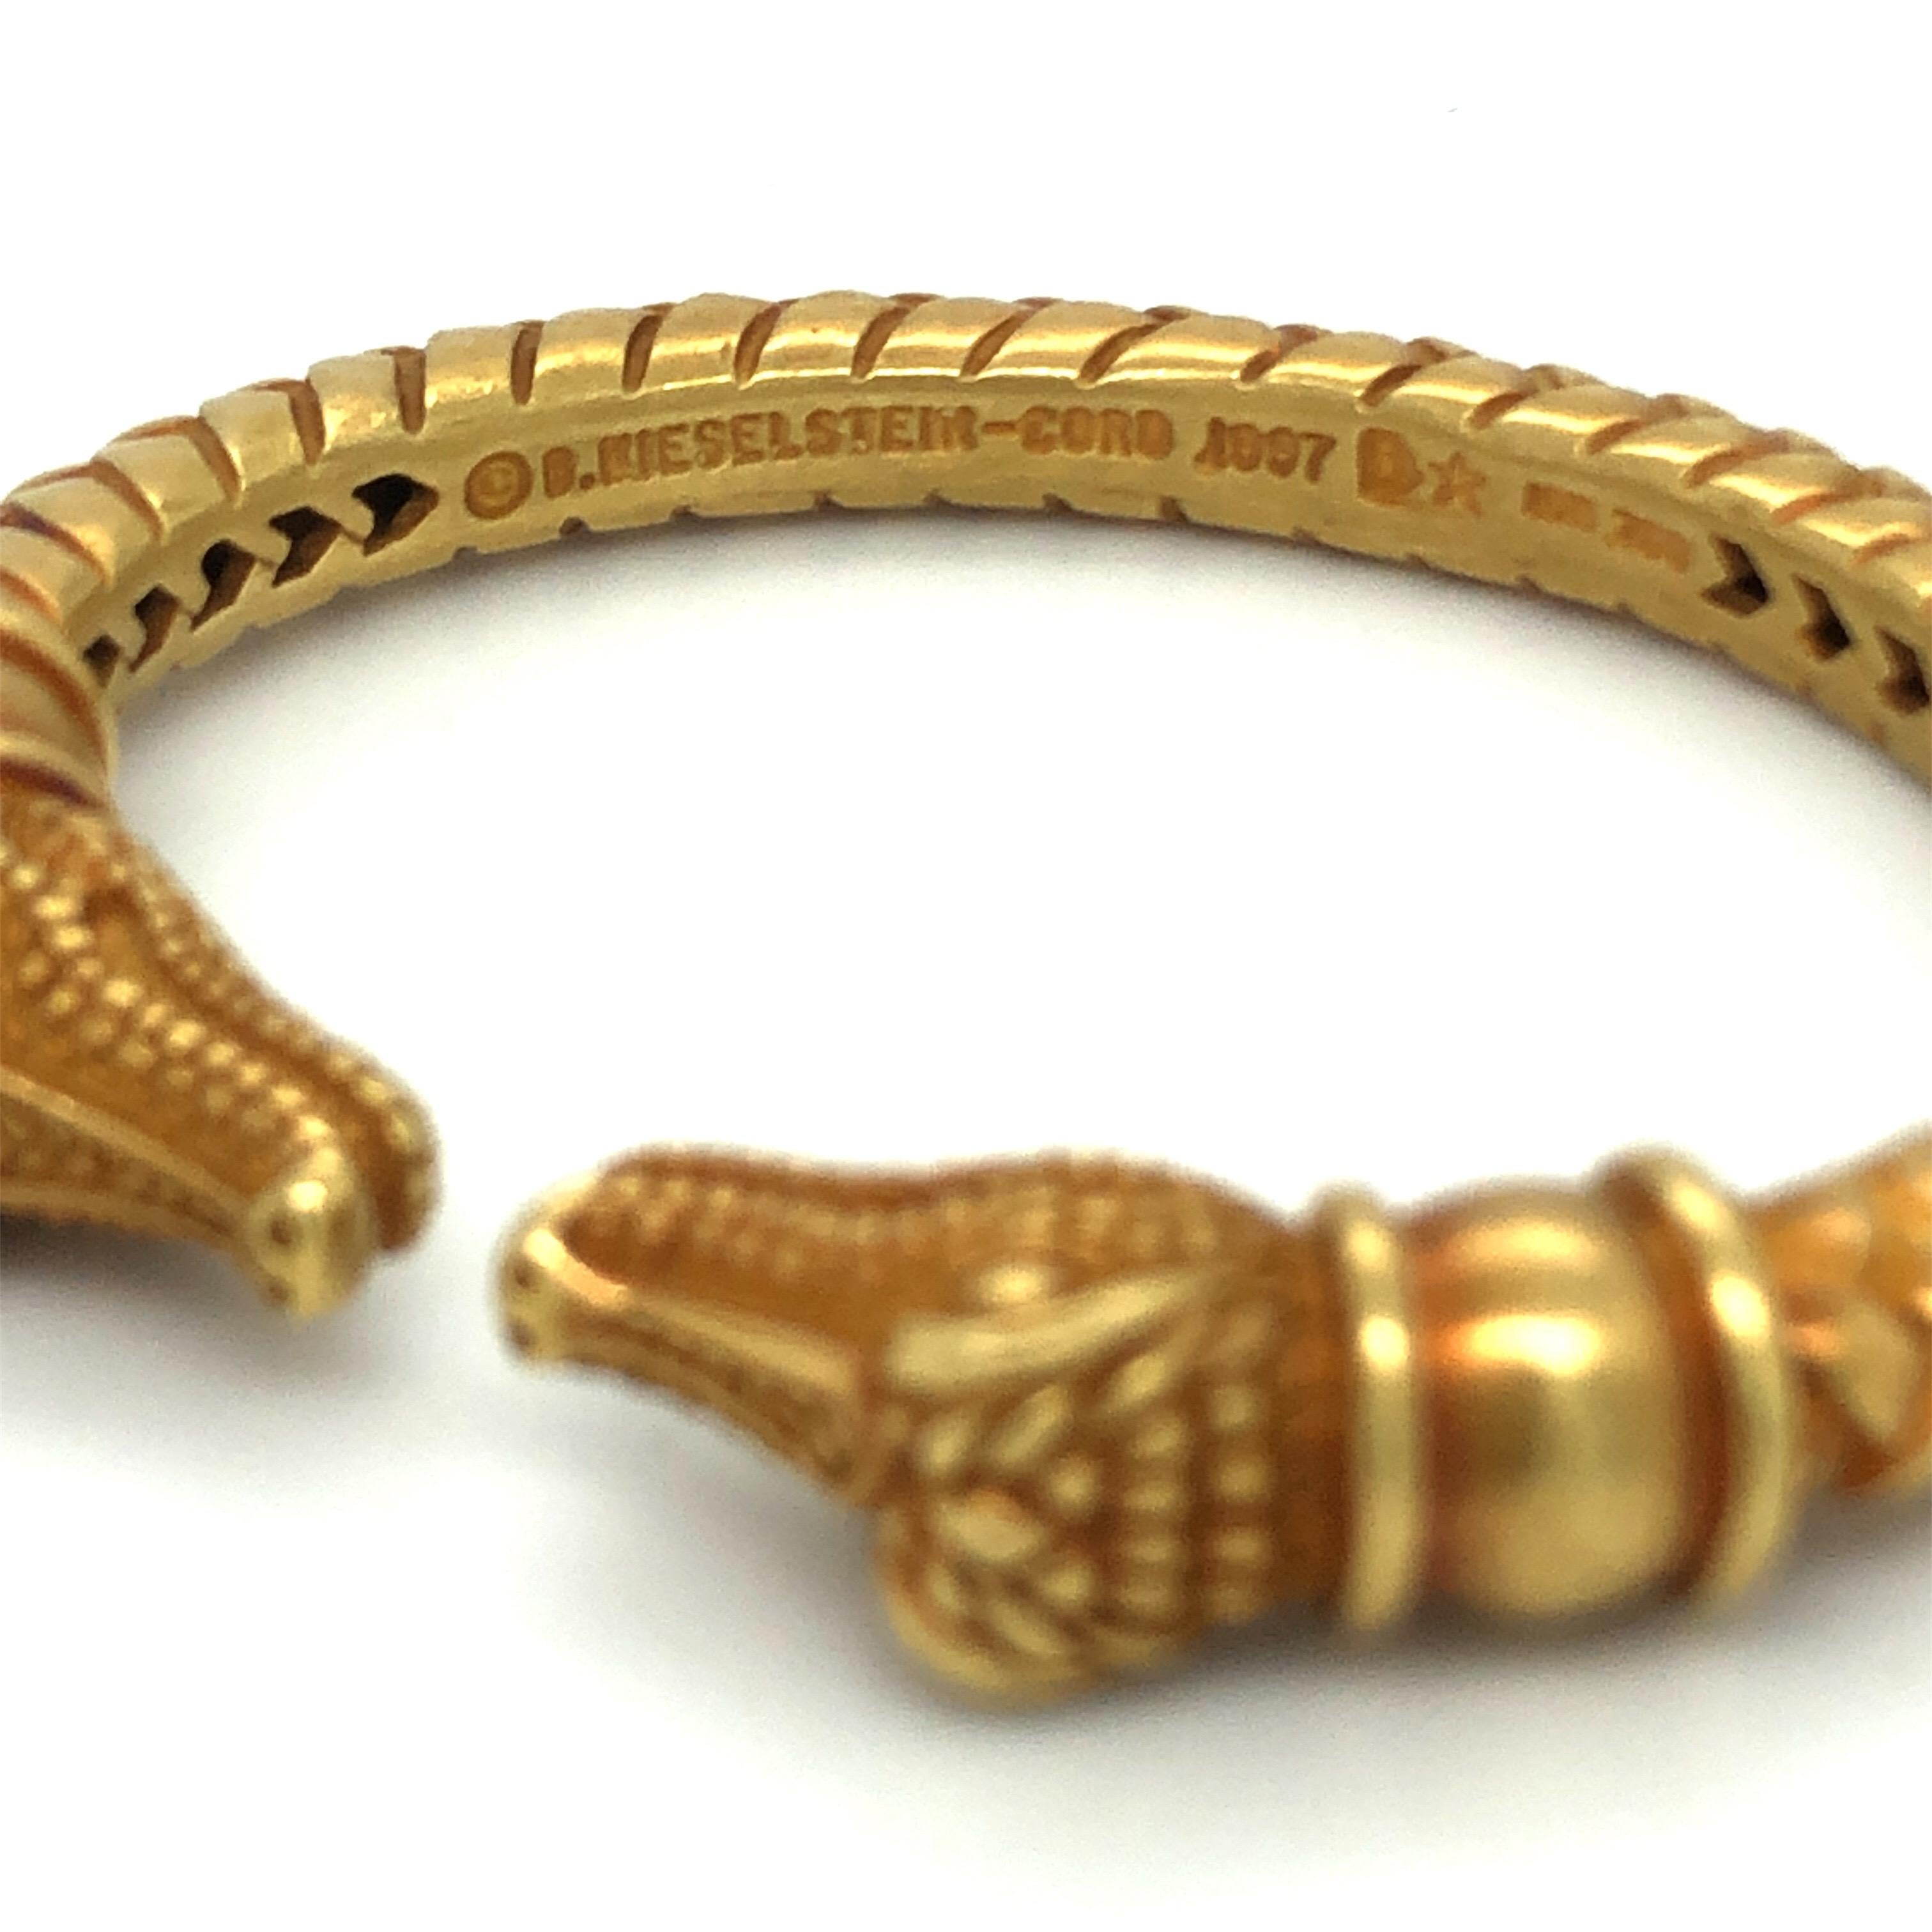 Women's or Men's Barry Kieselstein-Cord Two Alligator Heads 18 Karat Yellow Gold Bangle Bracelet